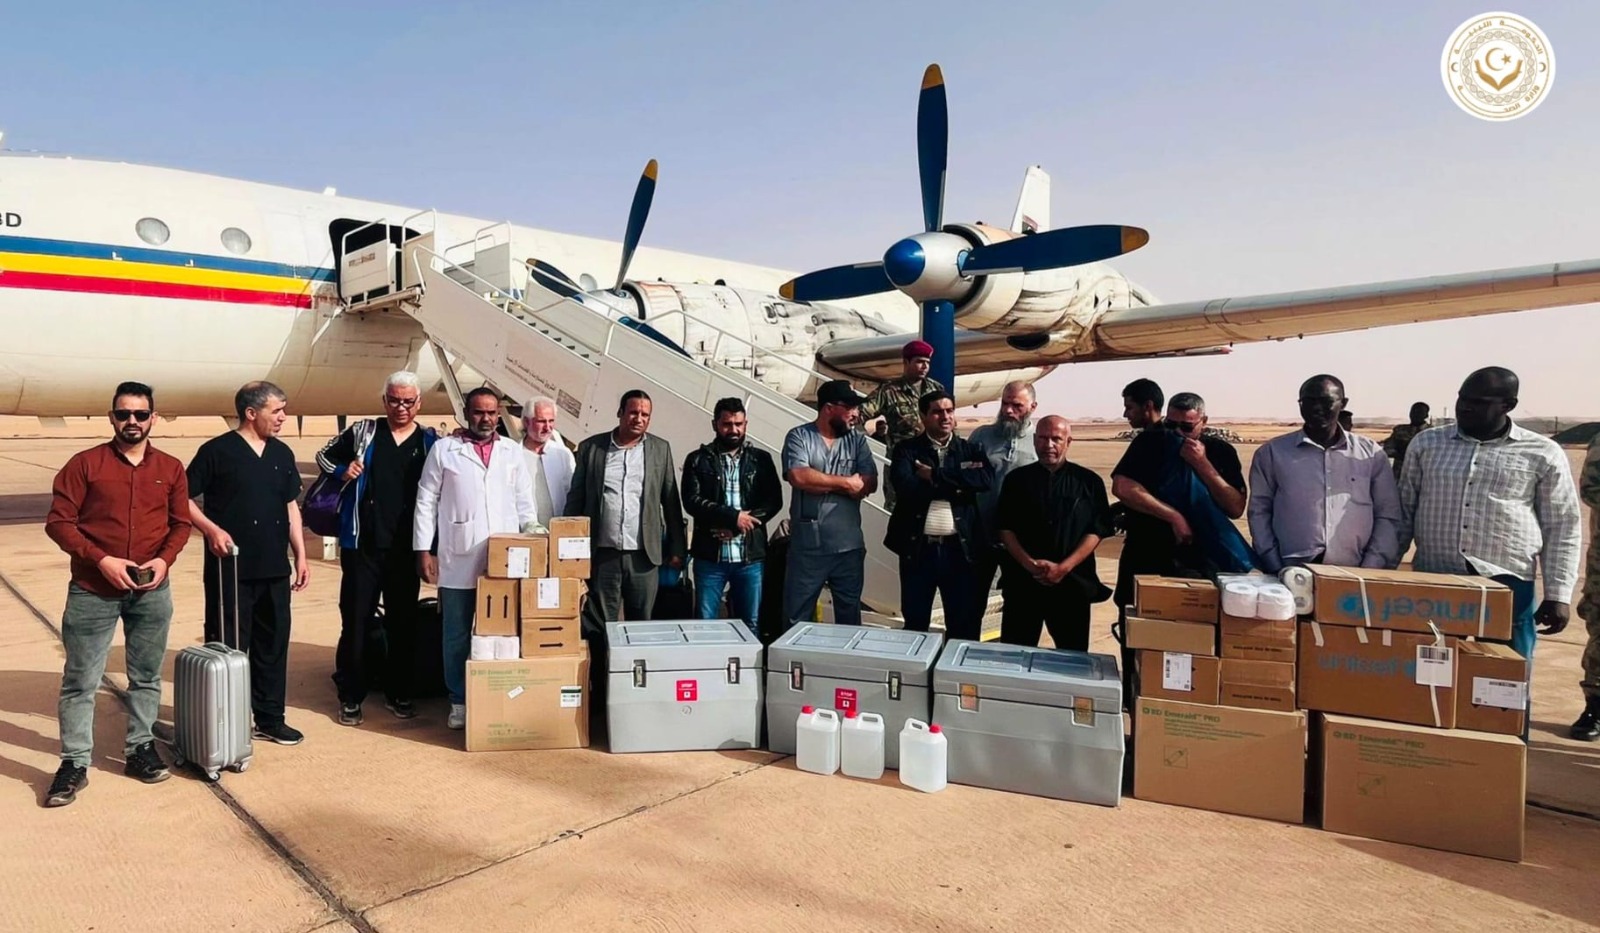 وزارة الصحة بالحكومة الليبية ترسل شحنة من التطعيمات لمدينة الكفرة